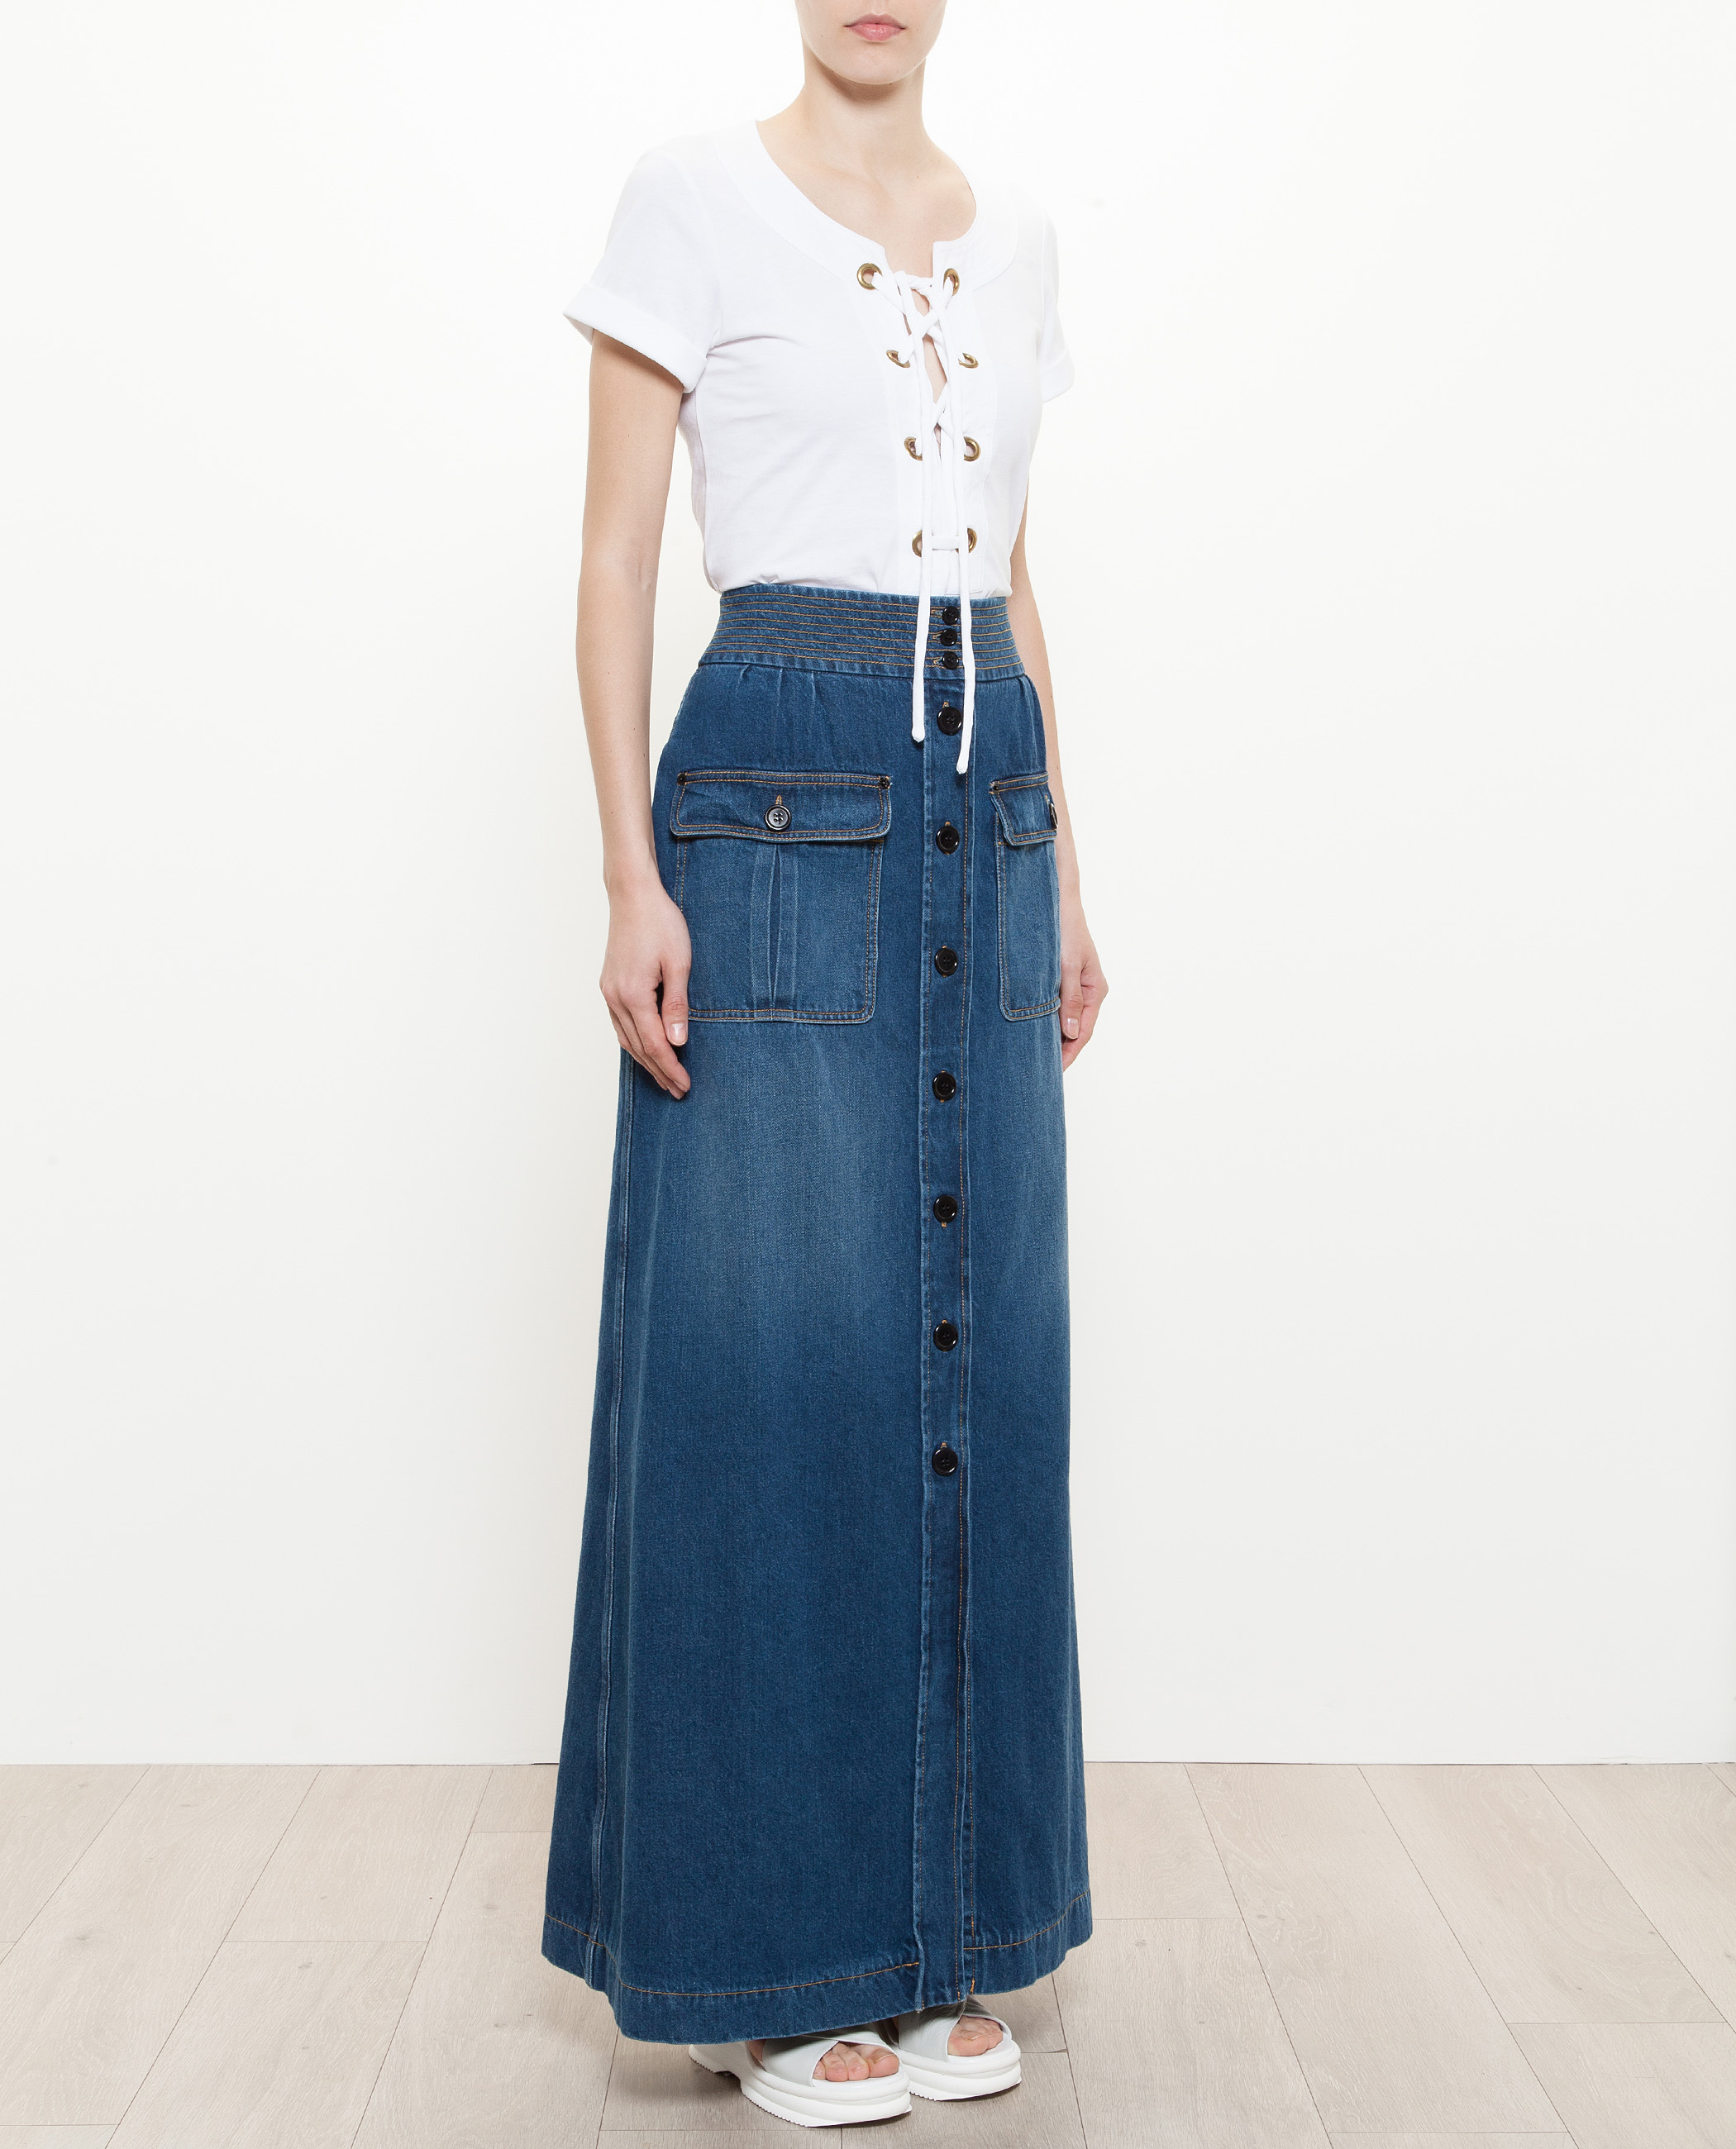 Chloé Long Denim Skirt in Blue - Lyst